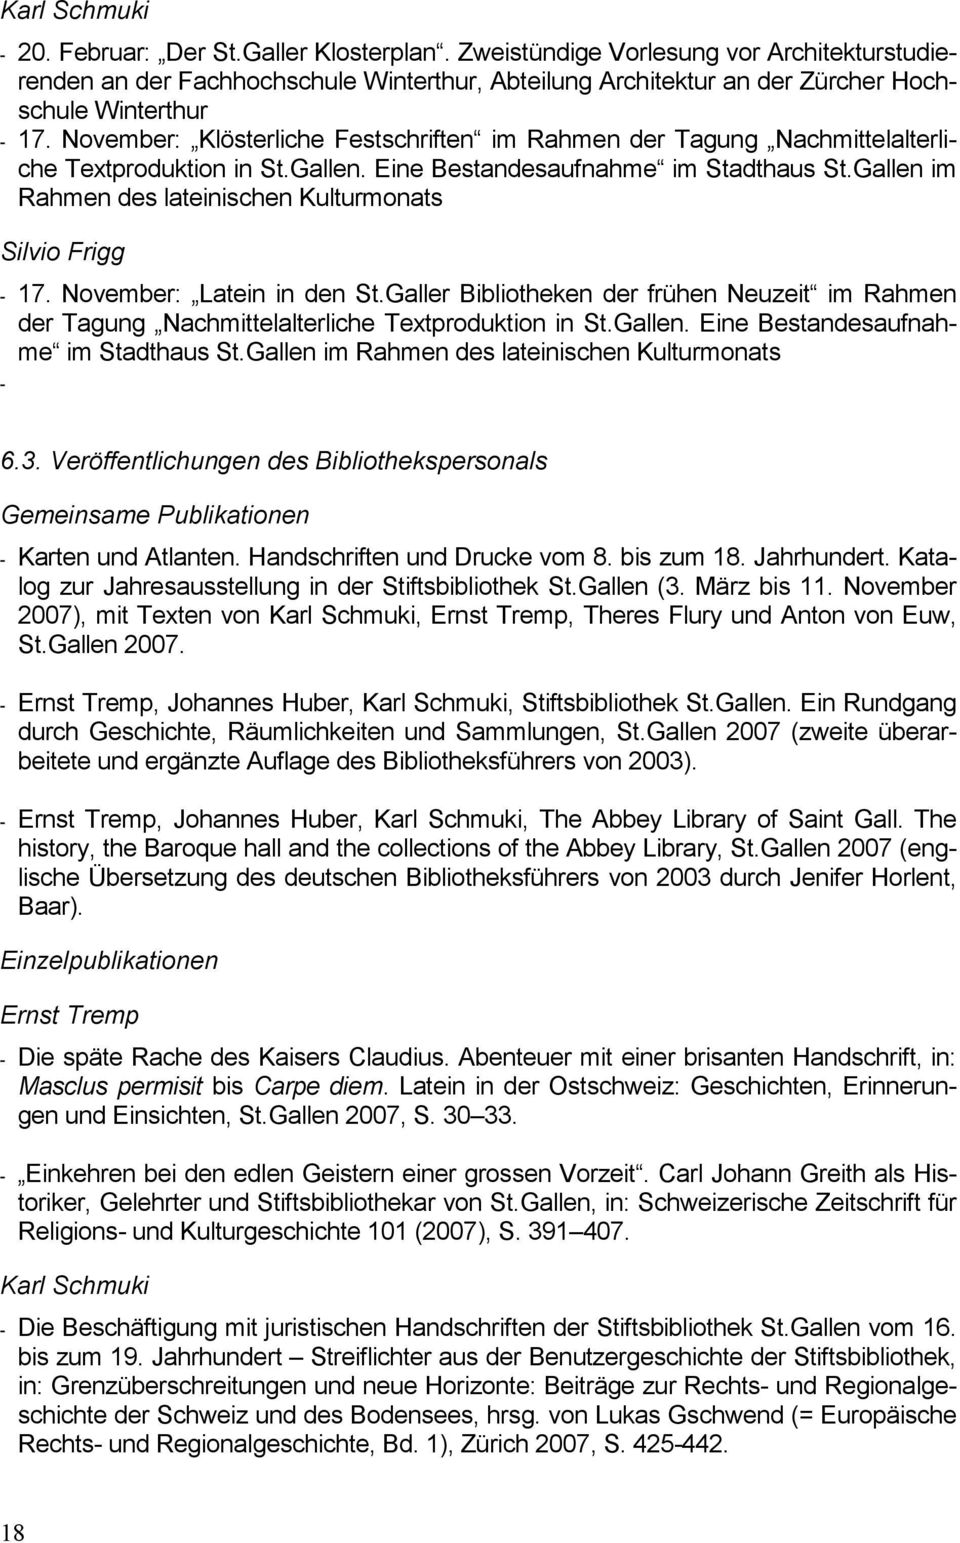 November: Klösterliche Festschriften im Rahmen der Tagung Nachmittelalterliche Textproduktion in St.Gallen. Eine Bestandesaufnahme im Stadthaus St.